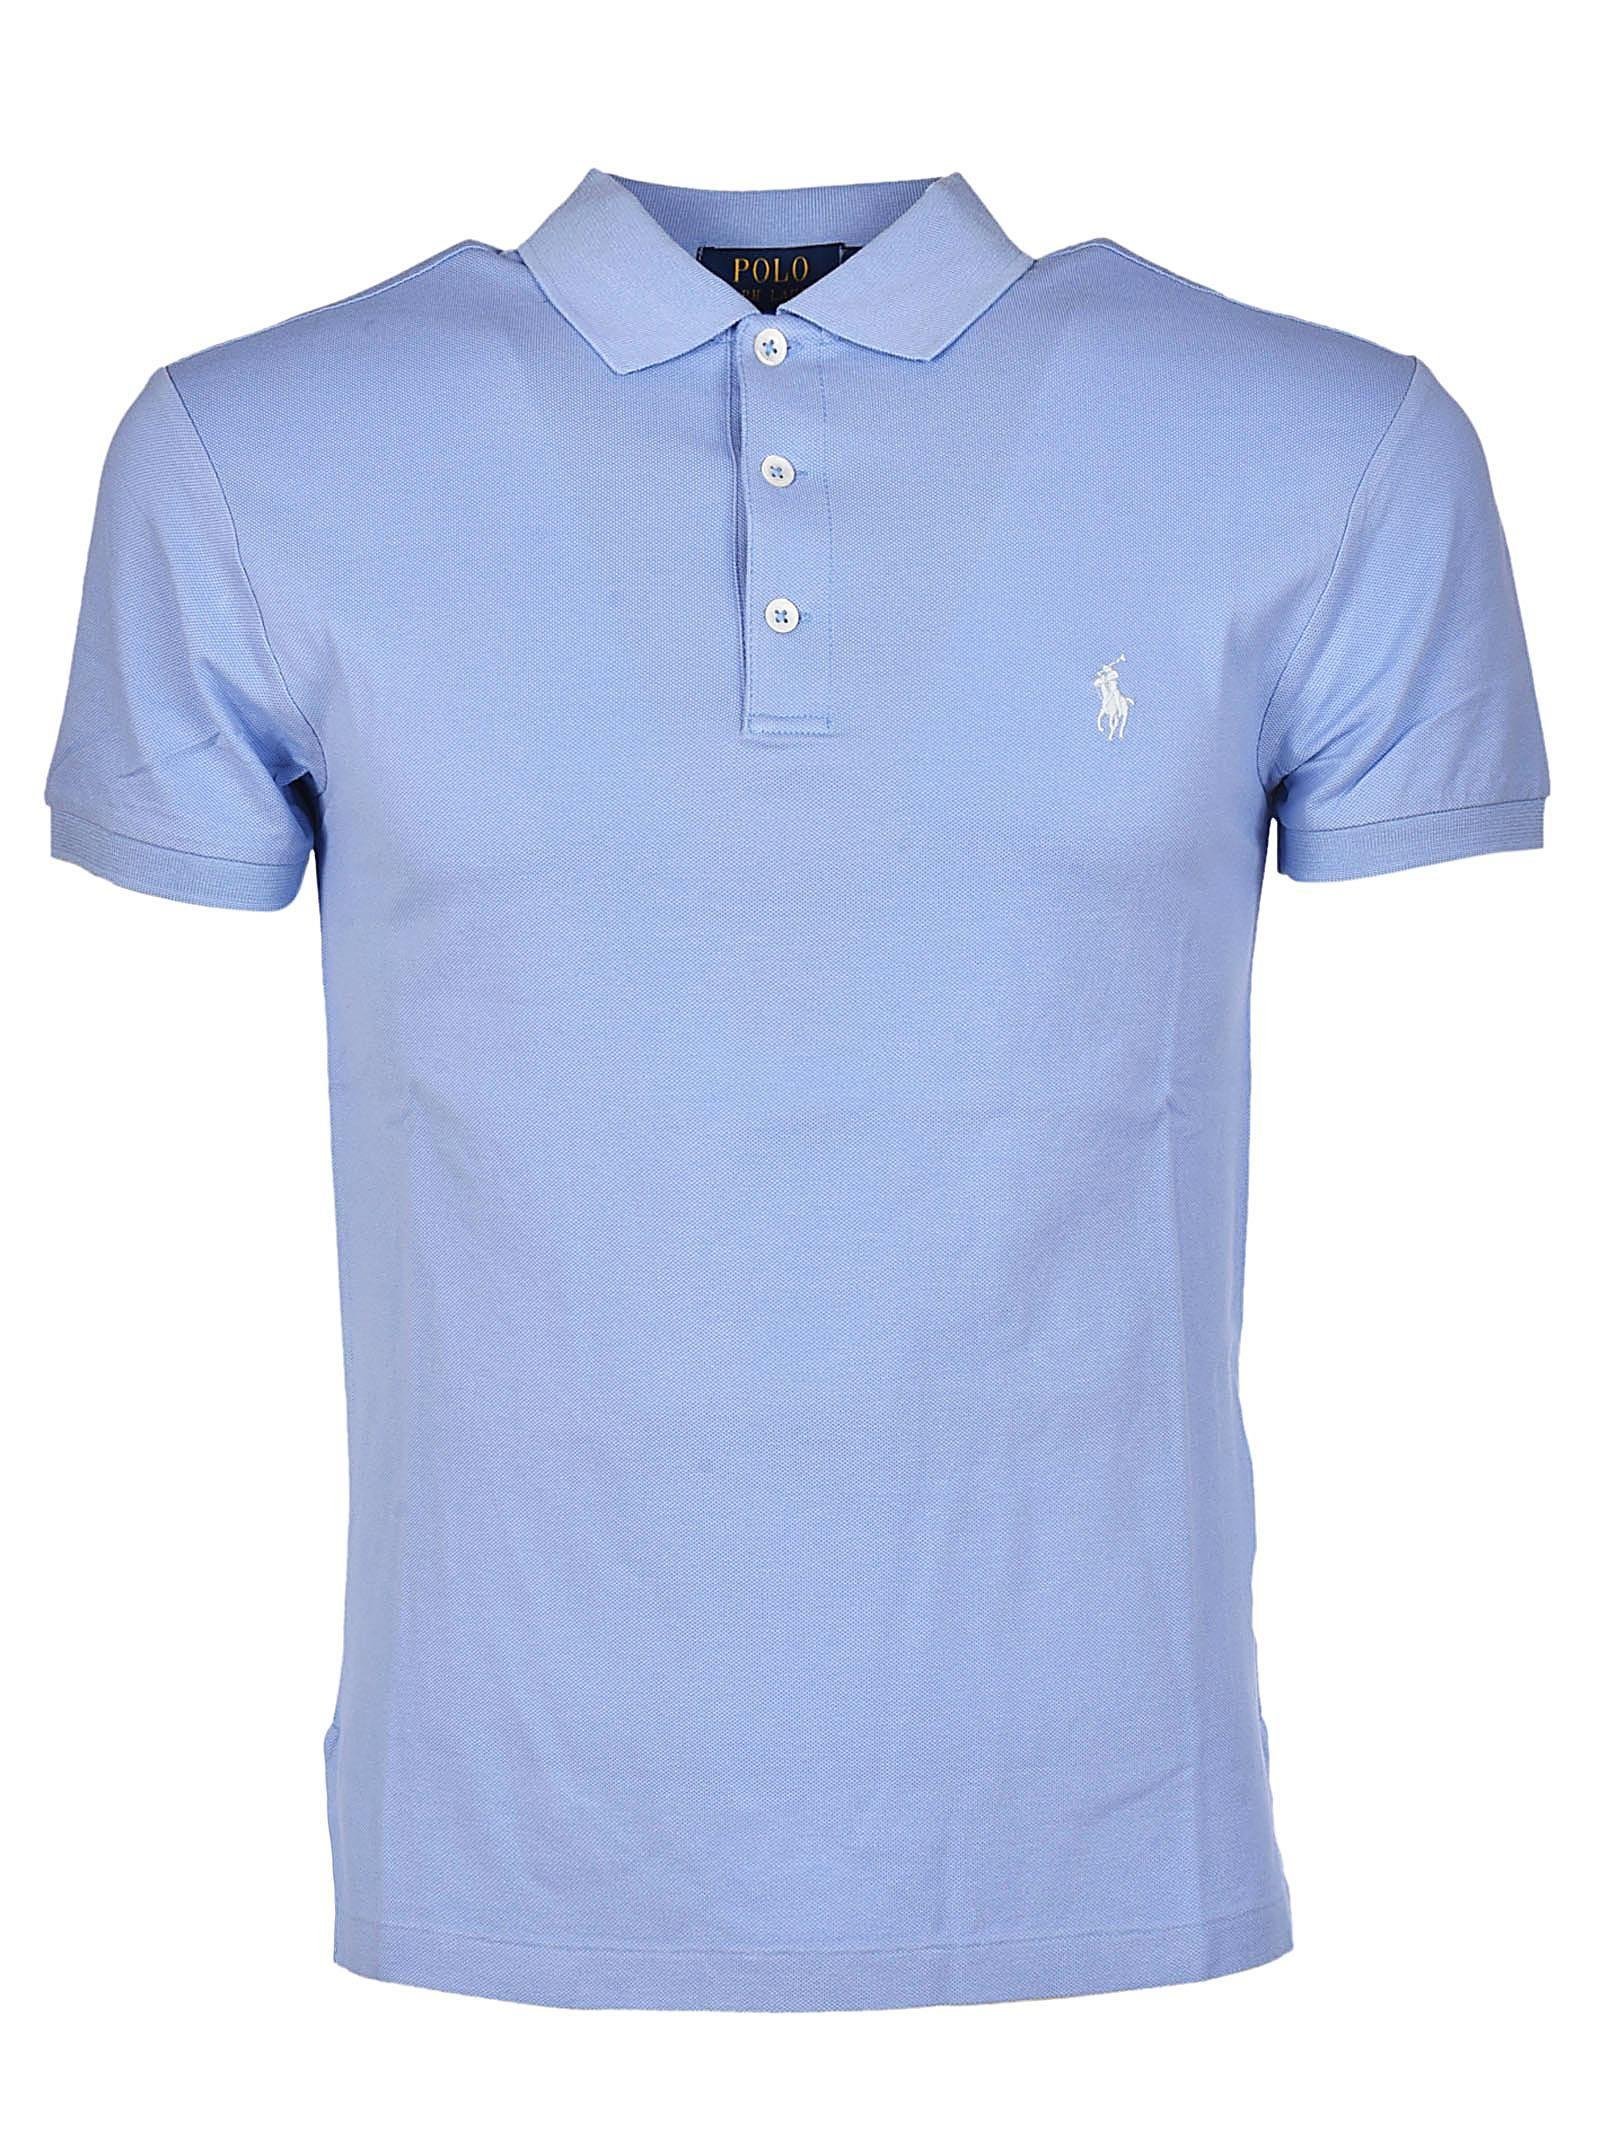 Ralph Lauren Light Blue Cotton Polo Shirt for Men - Lyst